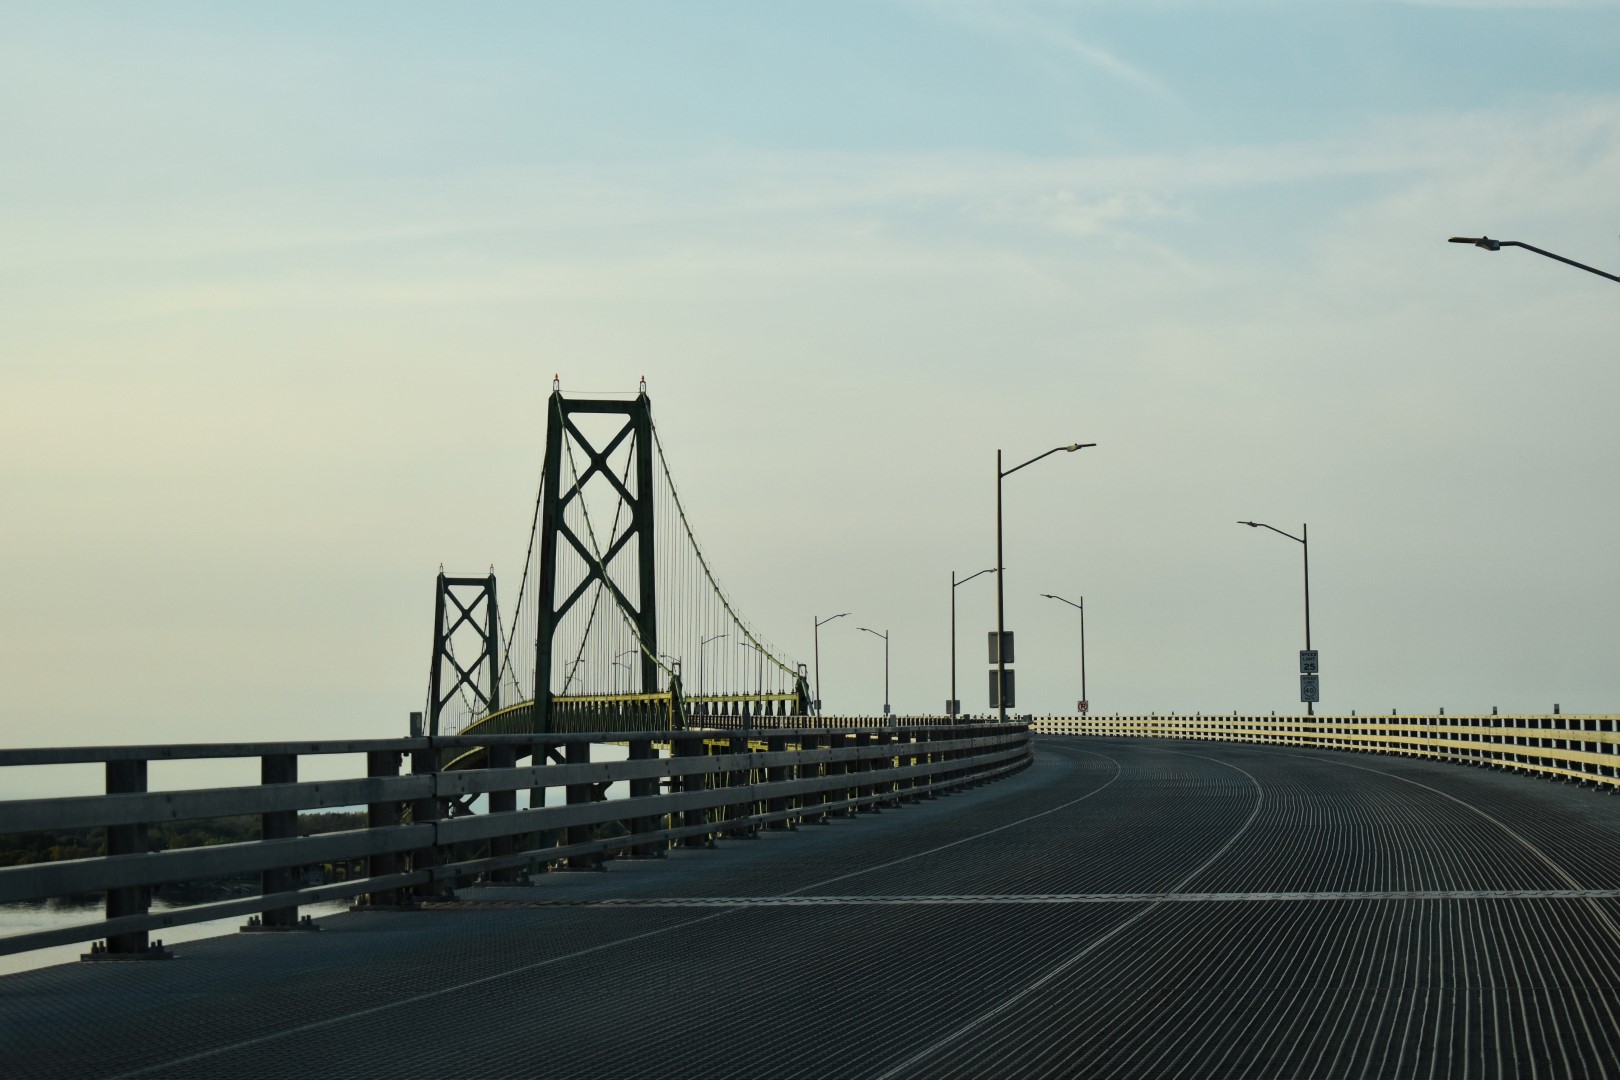 Ogdensburg-Prescott International Bridge to the USA